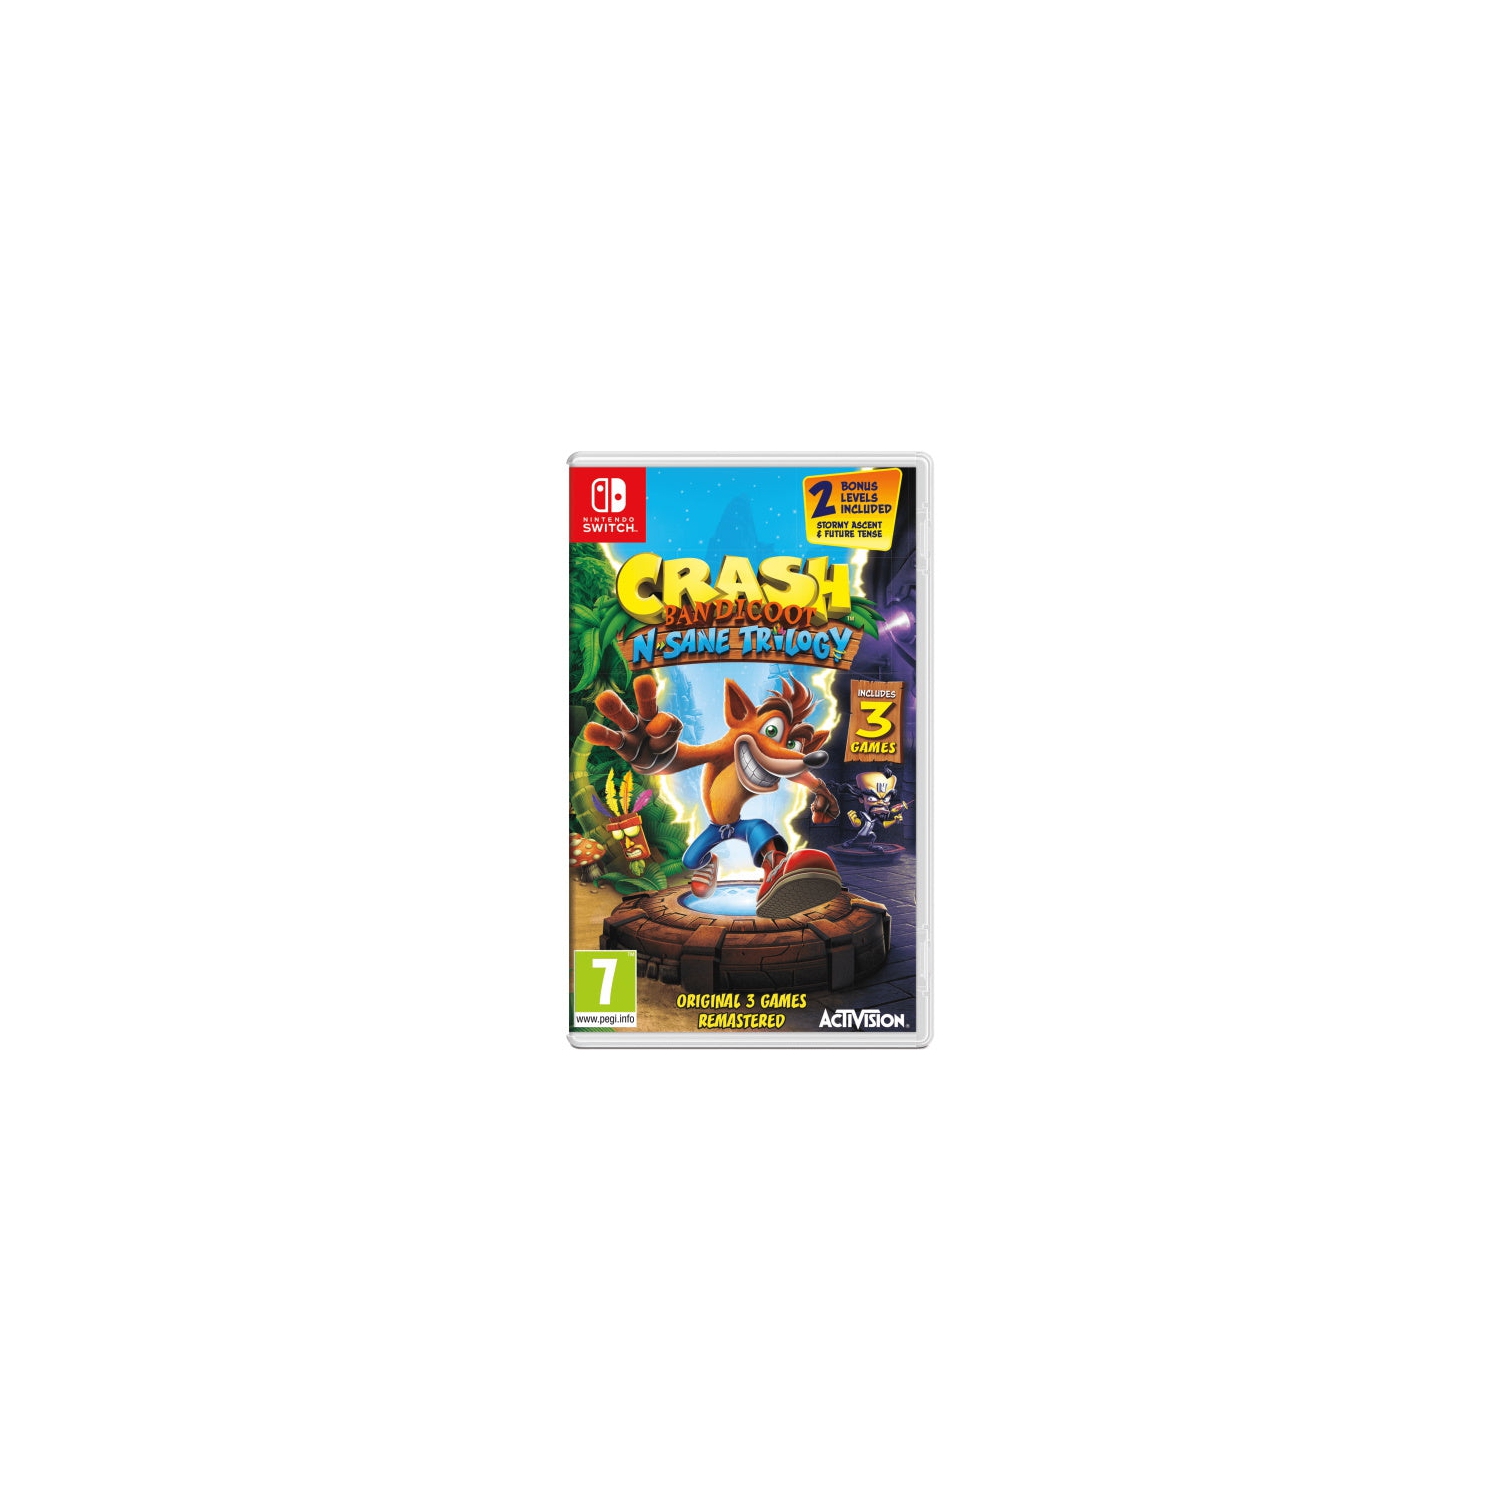 Crash Bandicoot N. Sane Trilogy [Nintendo Switch]